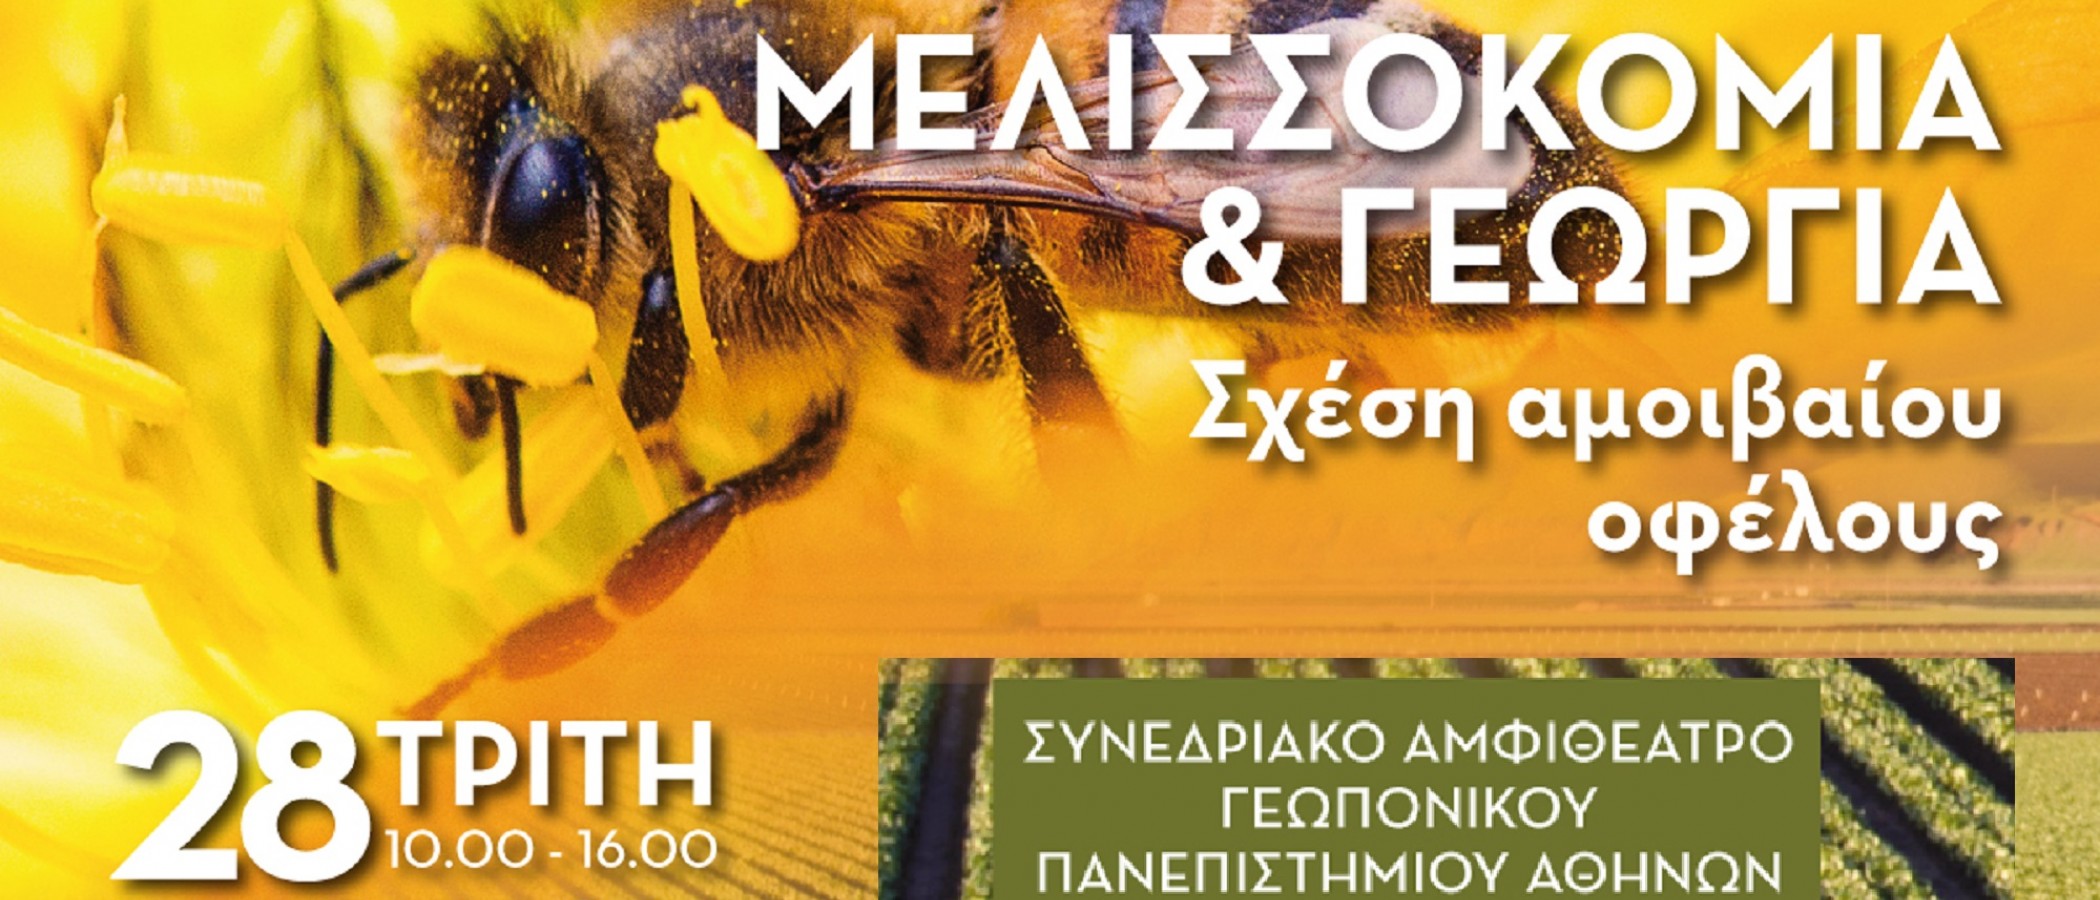 Μελισσοκομία και Γεωργία: Σχέση αμοιβαίου οφέλους"